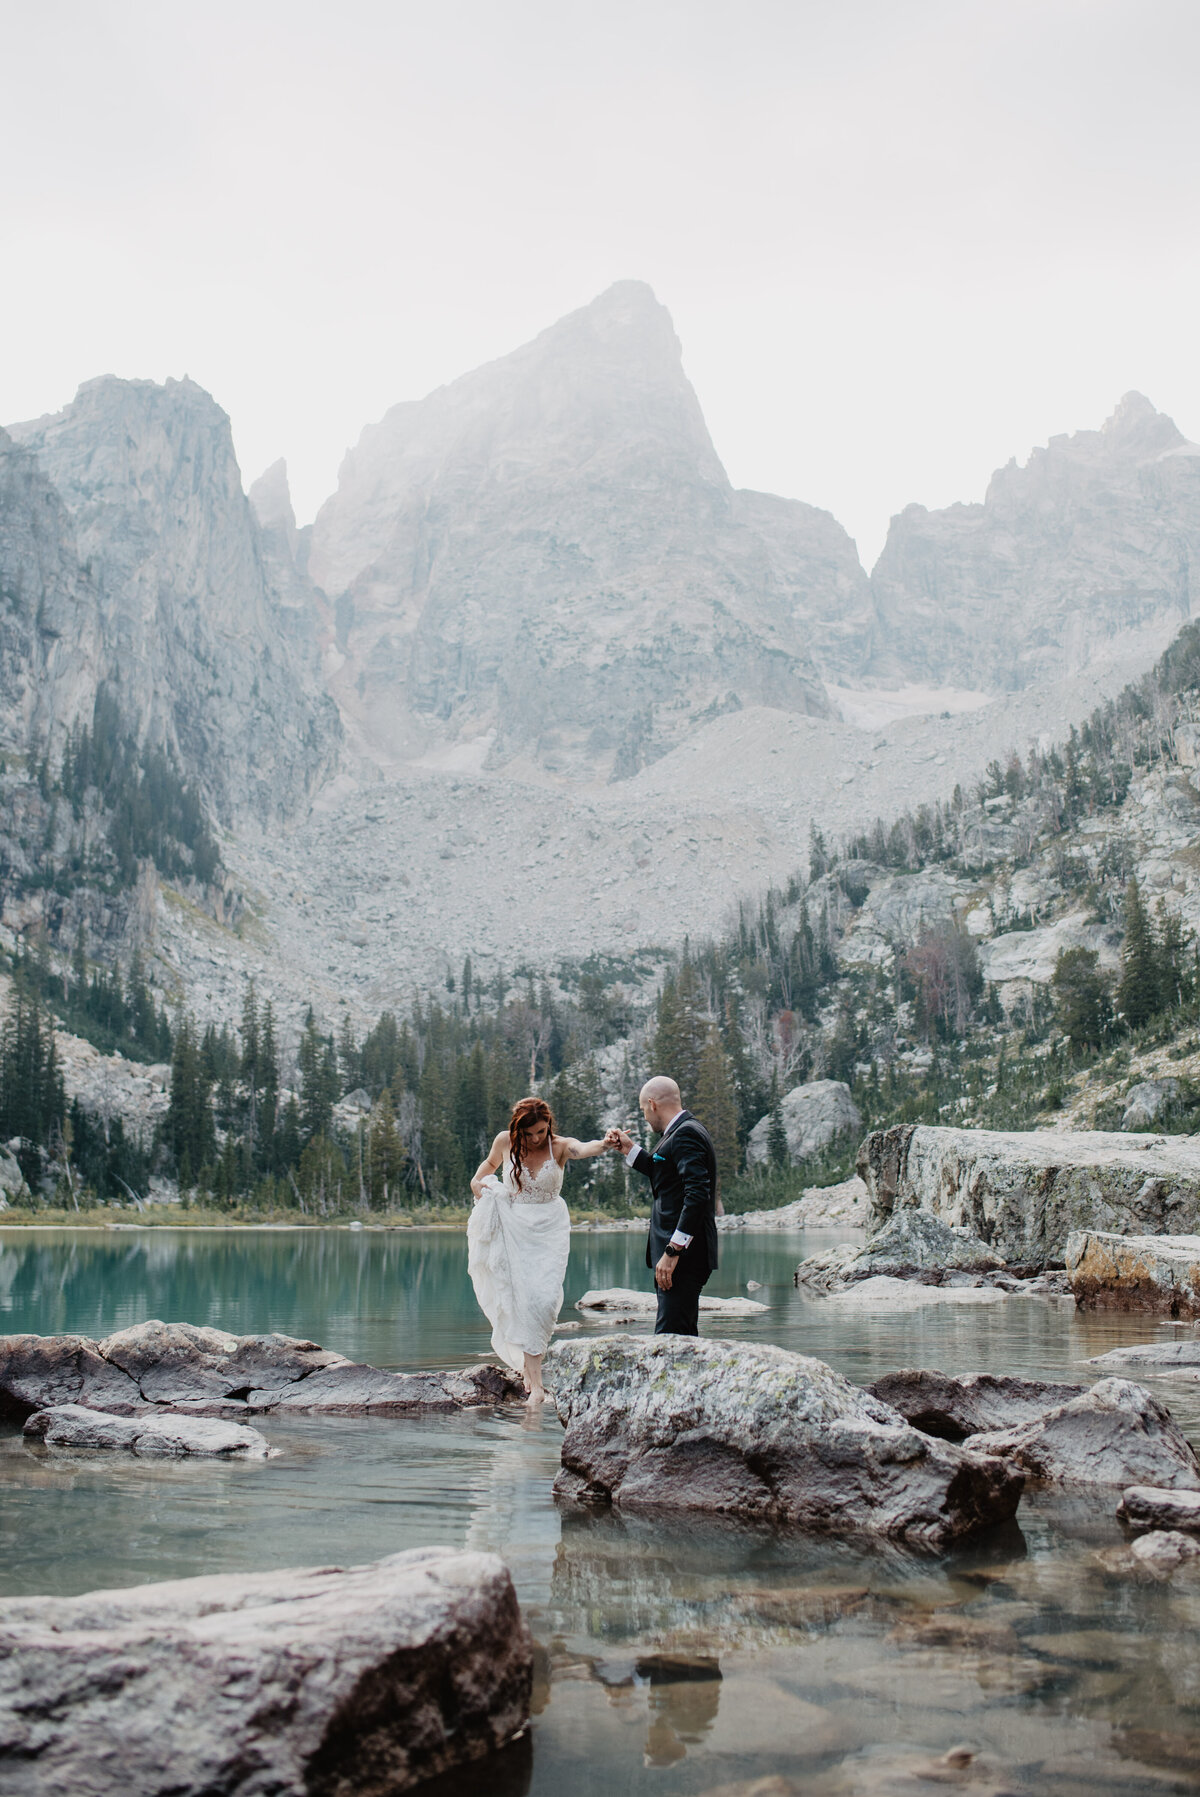 Jackson Hole Photographers capture couple walking on rocks together